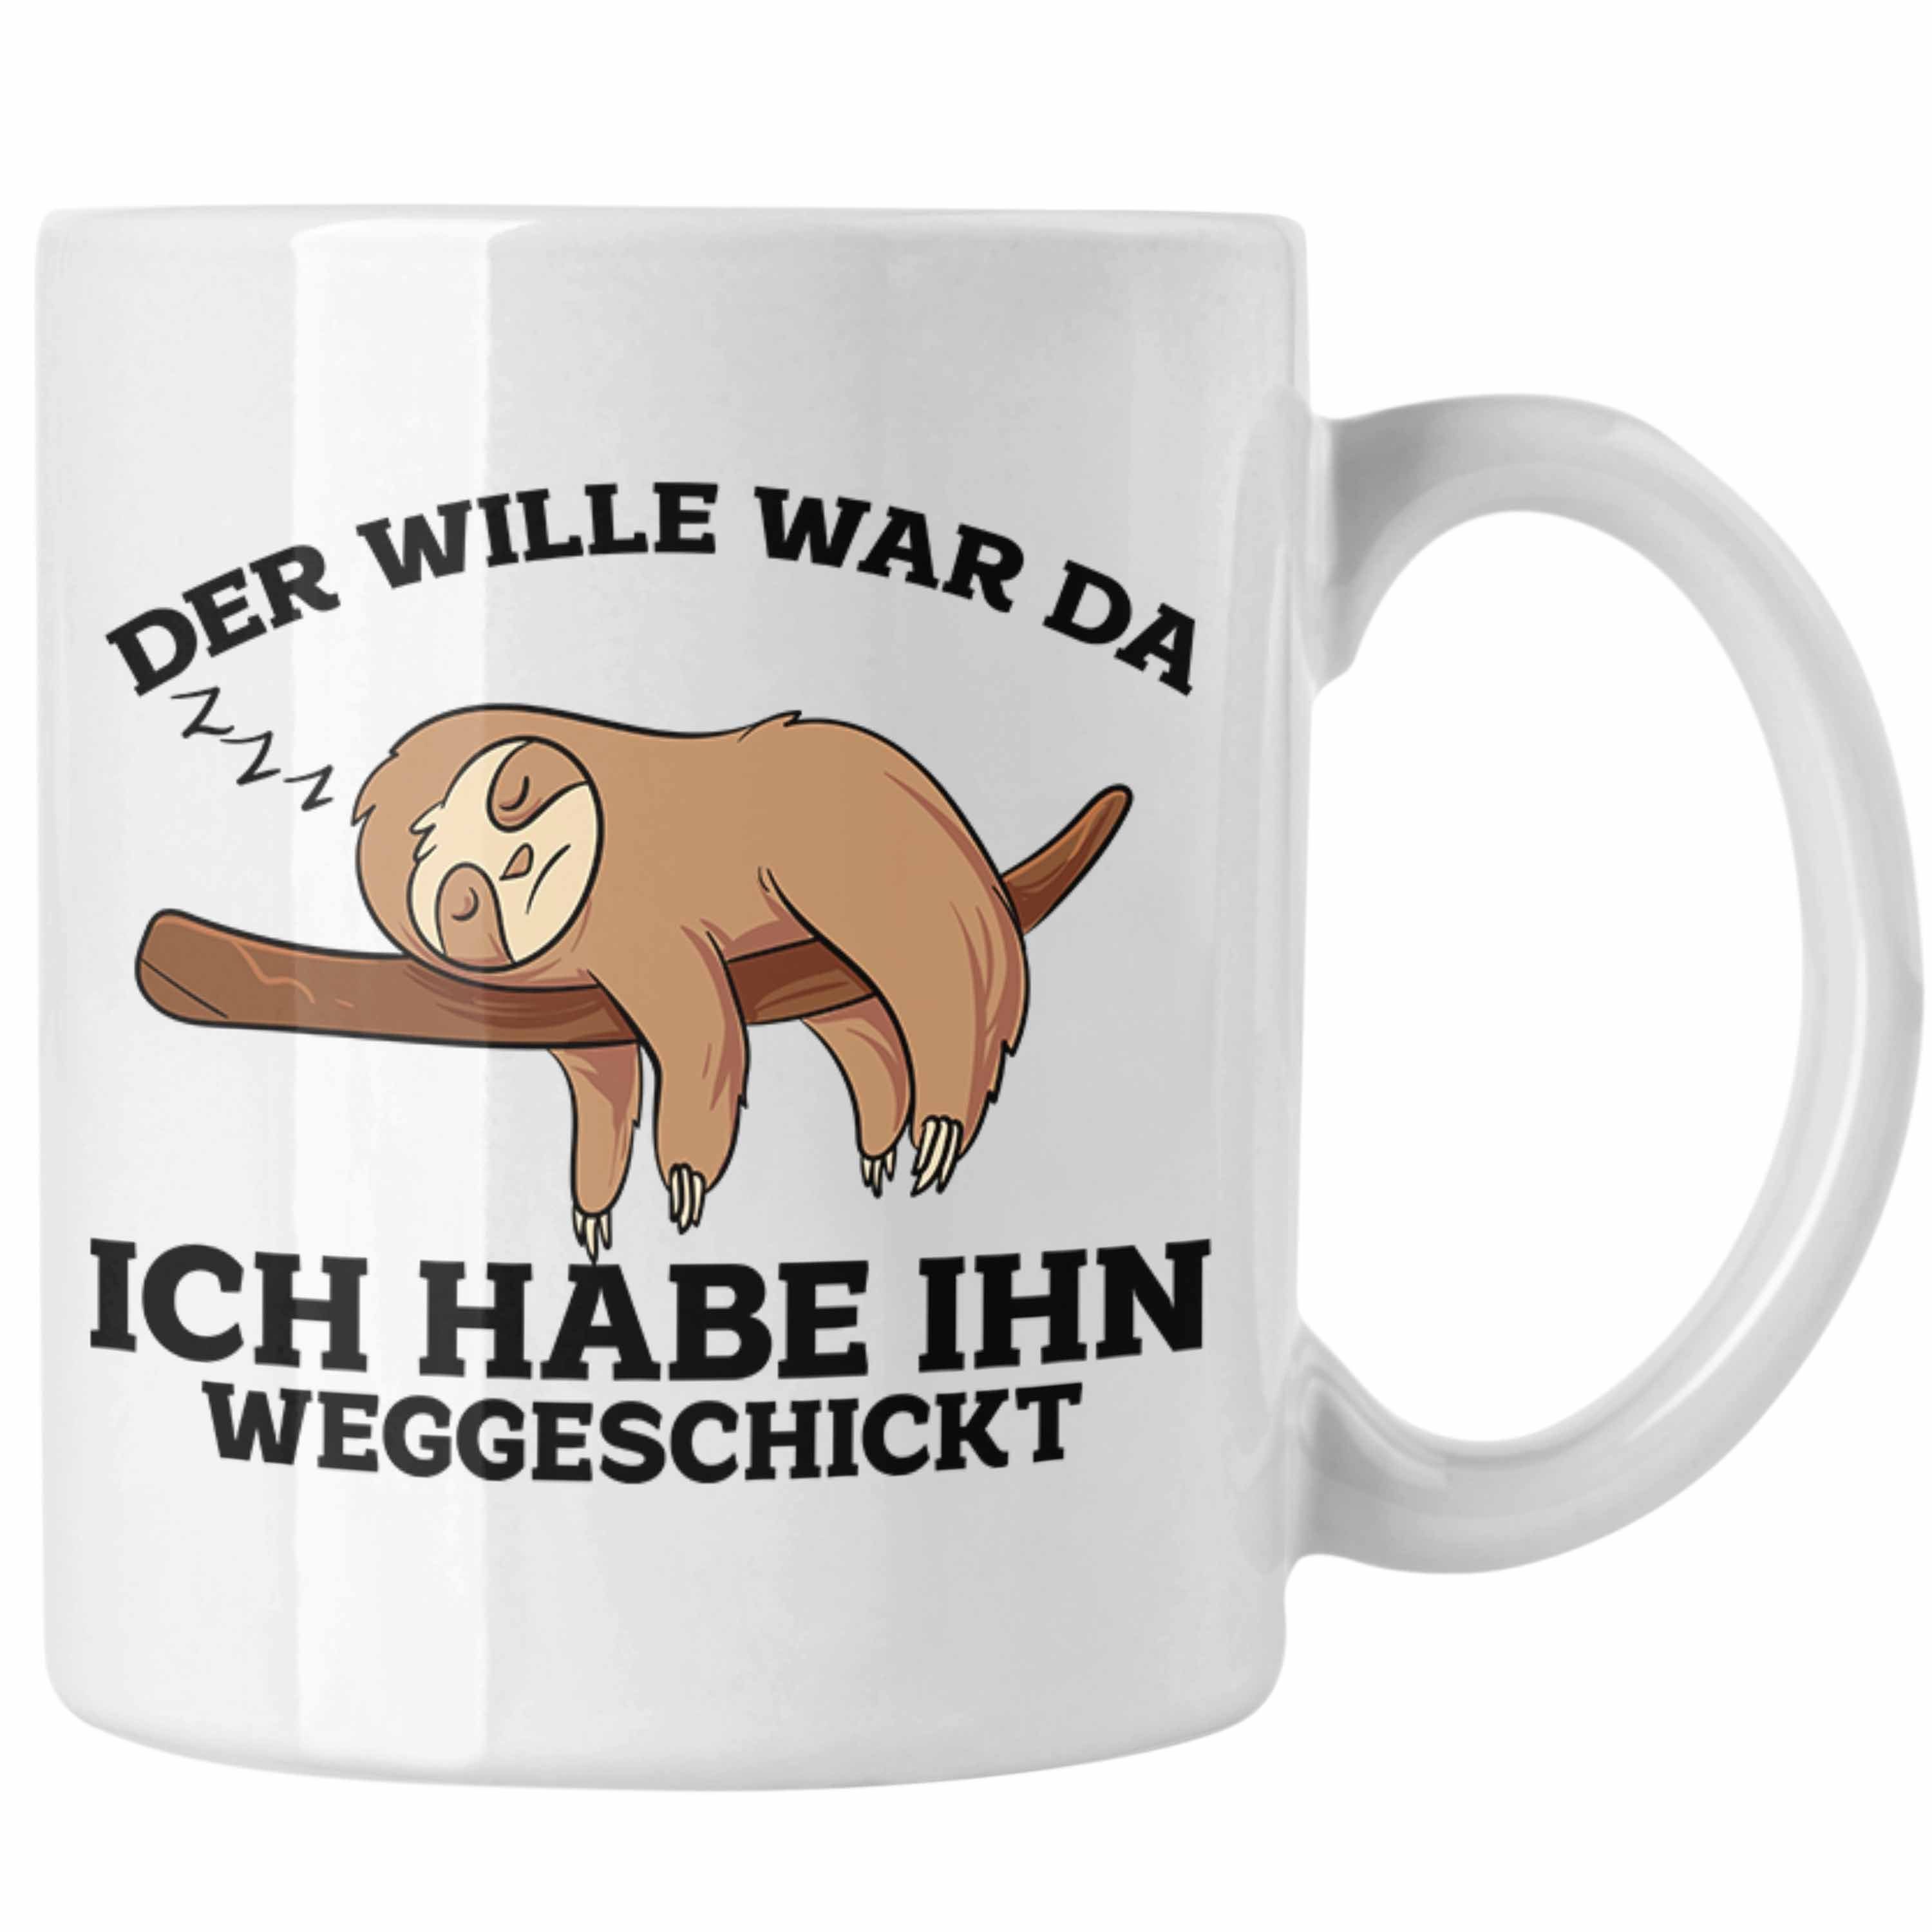 Trendation Tasse Lustige Tasse Will Faultier Weiss Spruch War mit Da" "Der